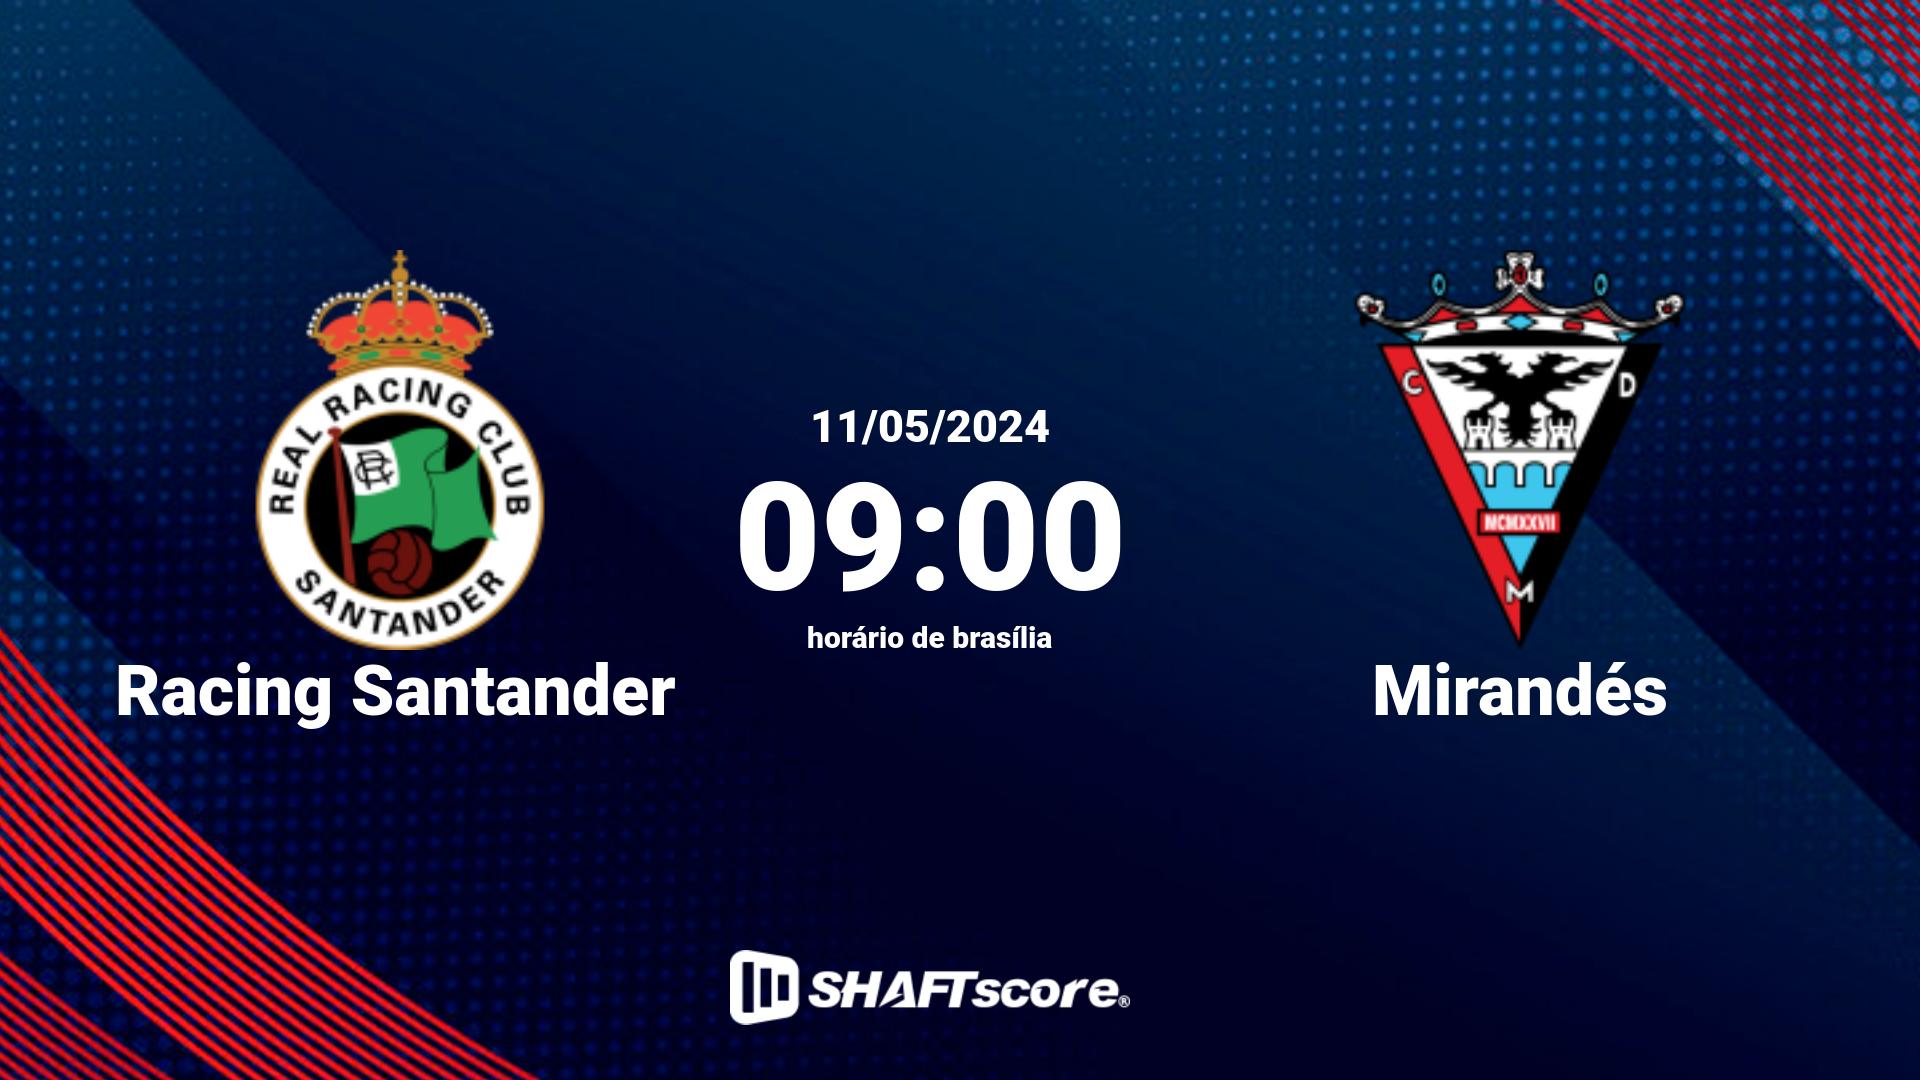 Estatísticas do jogo Racing Santander vs Mirandés 11.05 09:00